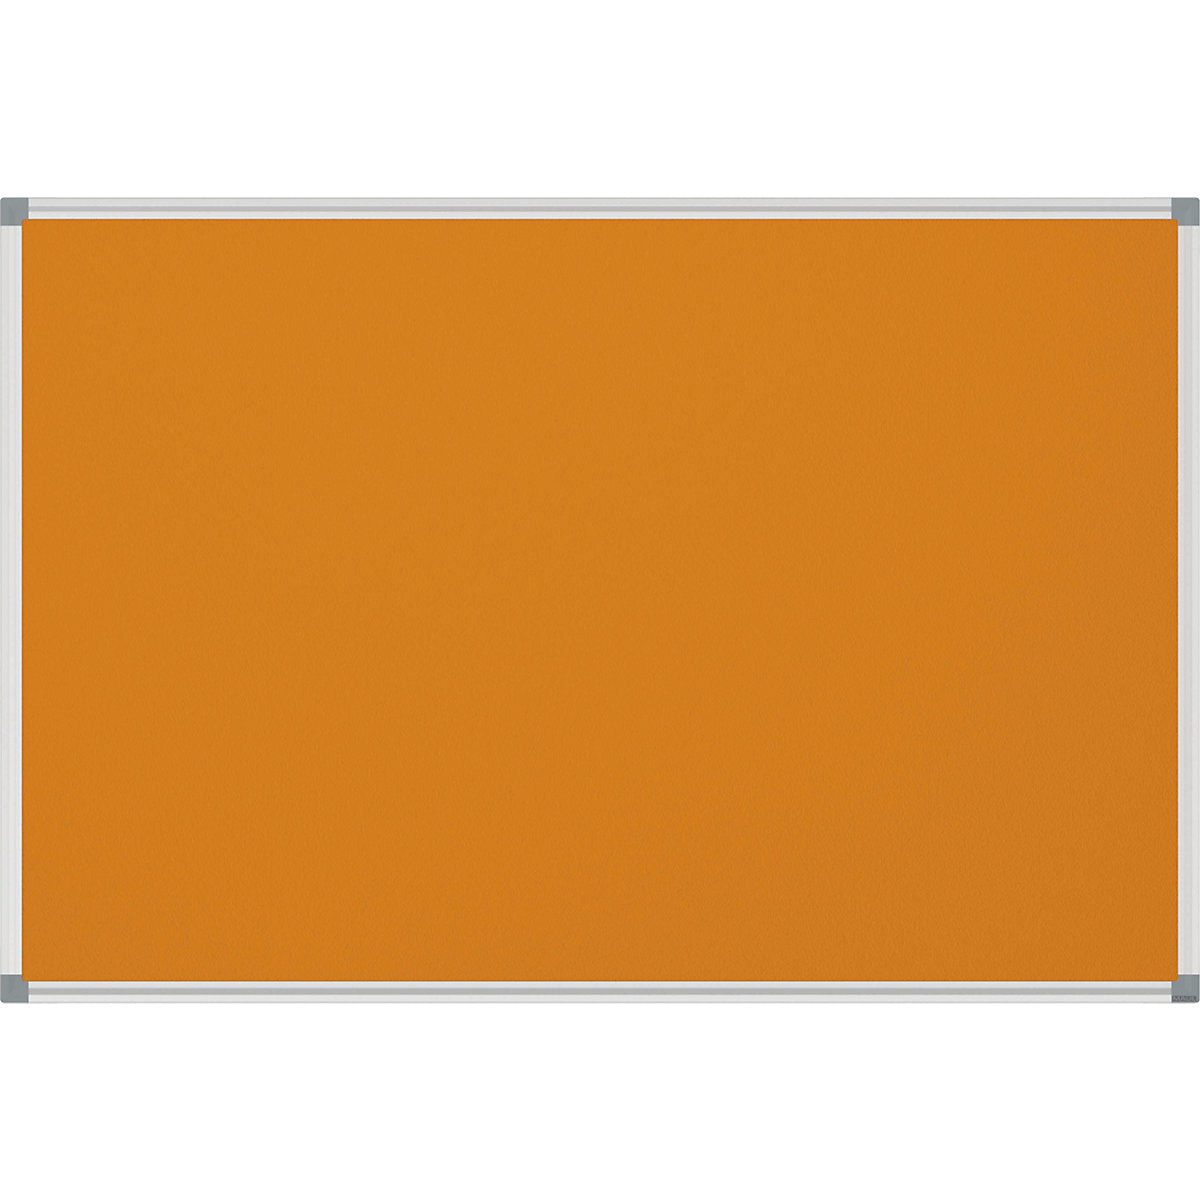 MAUL Pinnboard STANDARD, stabil, Textil, orange, BxH 900 x 600 mm